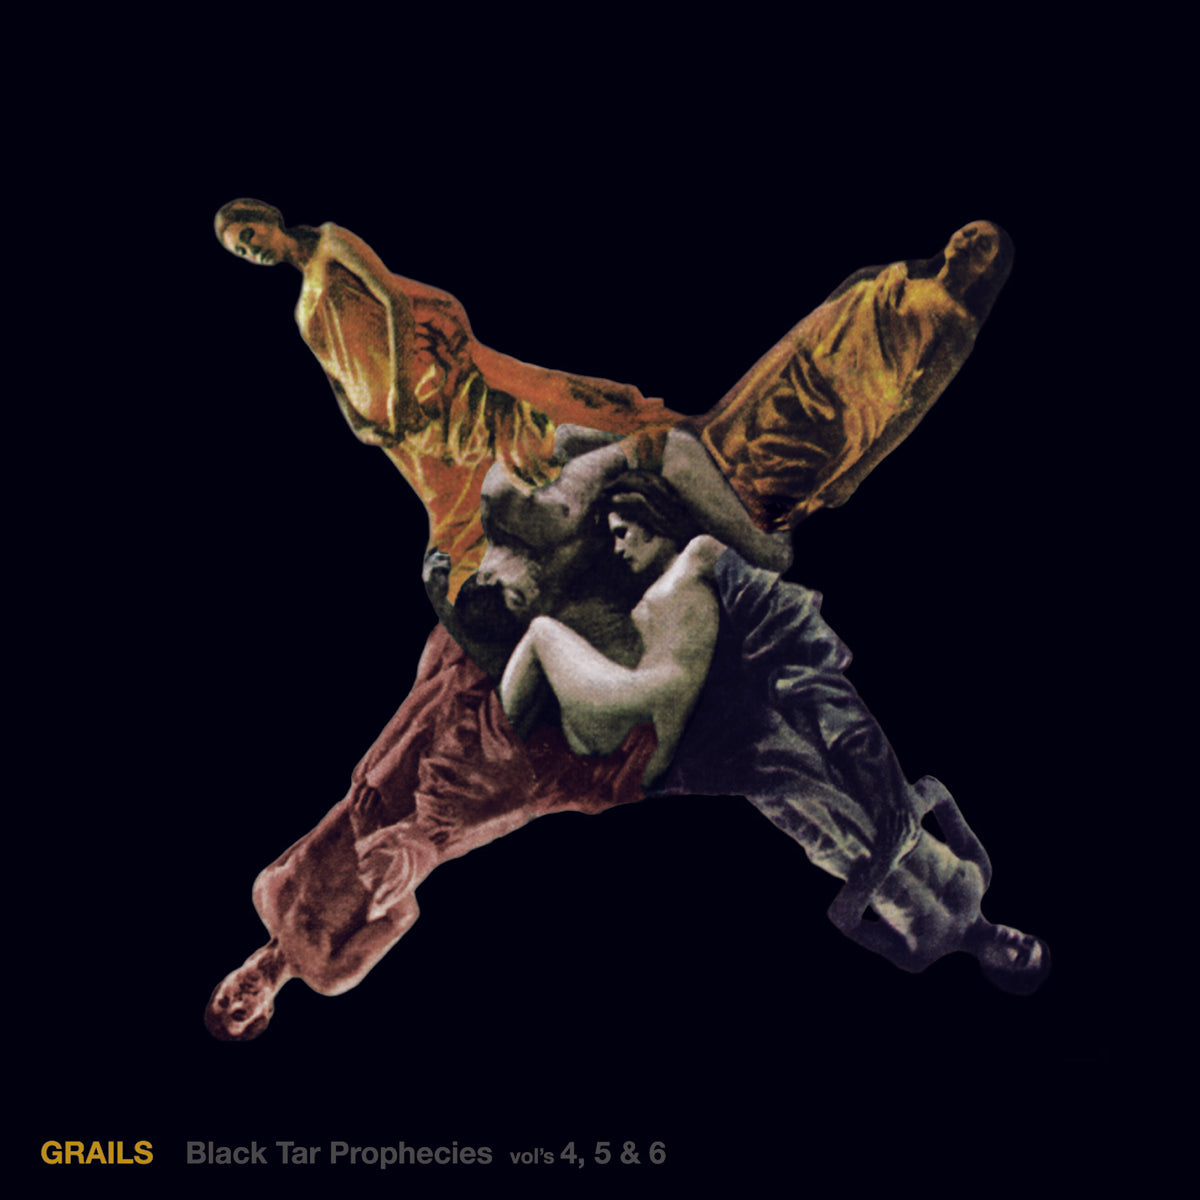 Grails - Black Tar Prophecies Vol's 4, 5 & 6